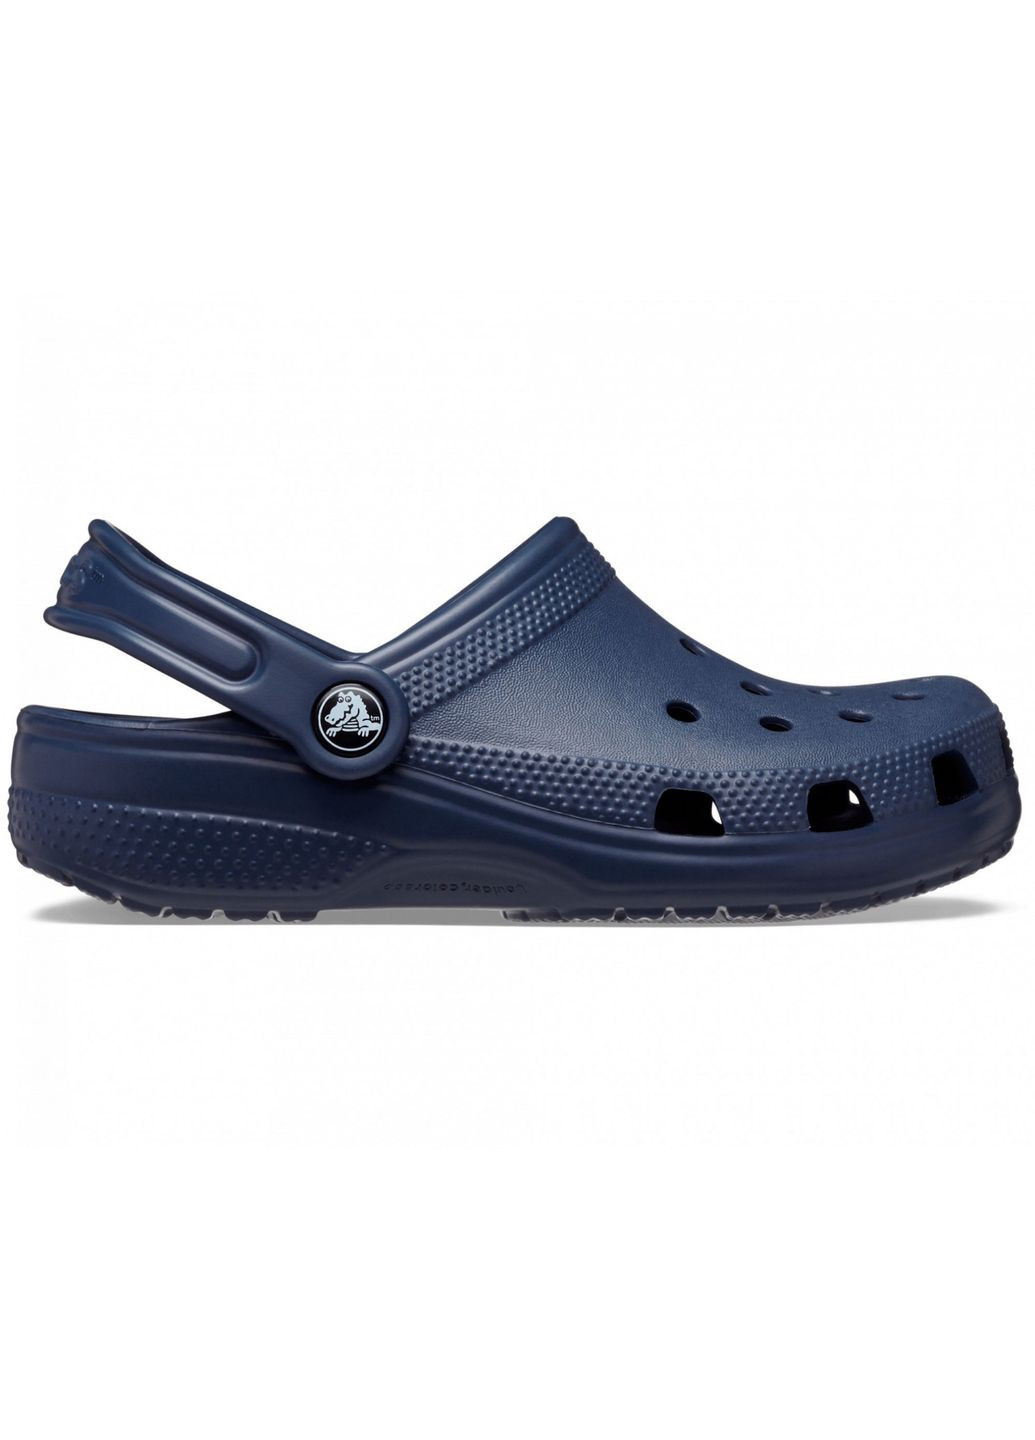 Синие сабо kids classic clog navy c9\26\16.5 см 206991 Crocs